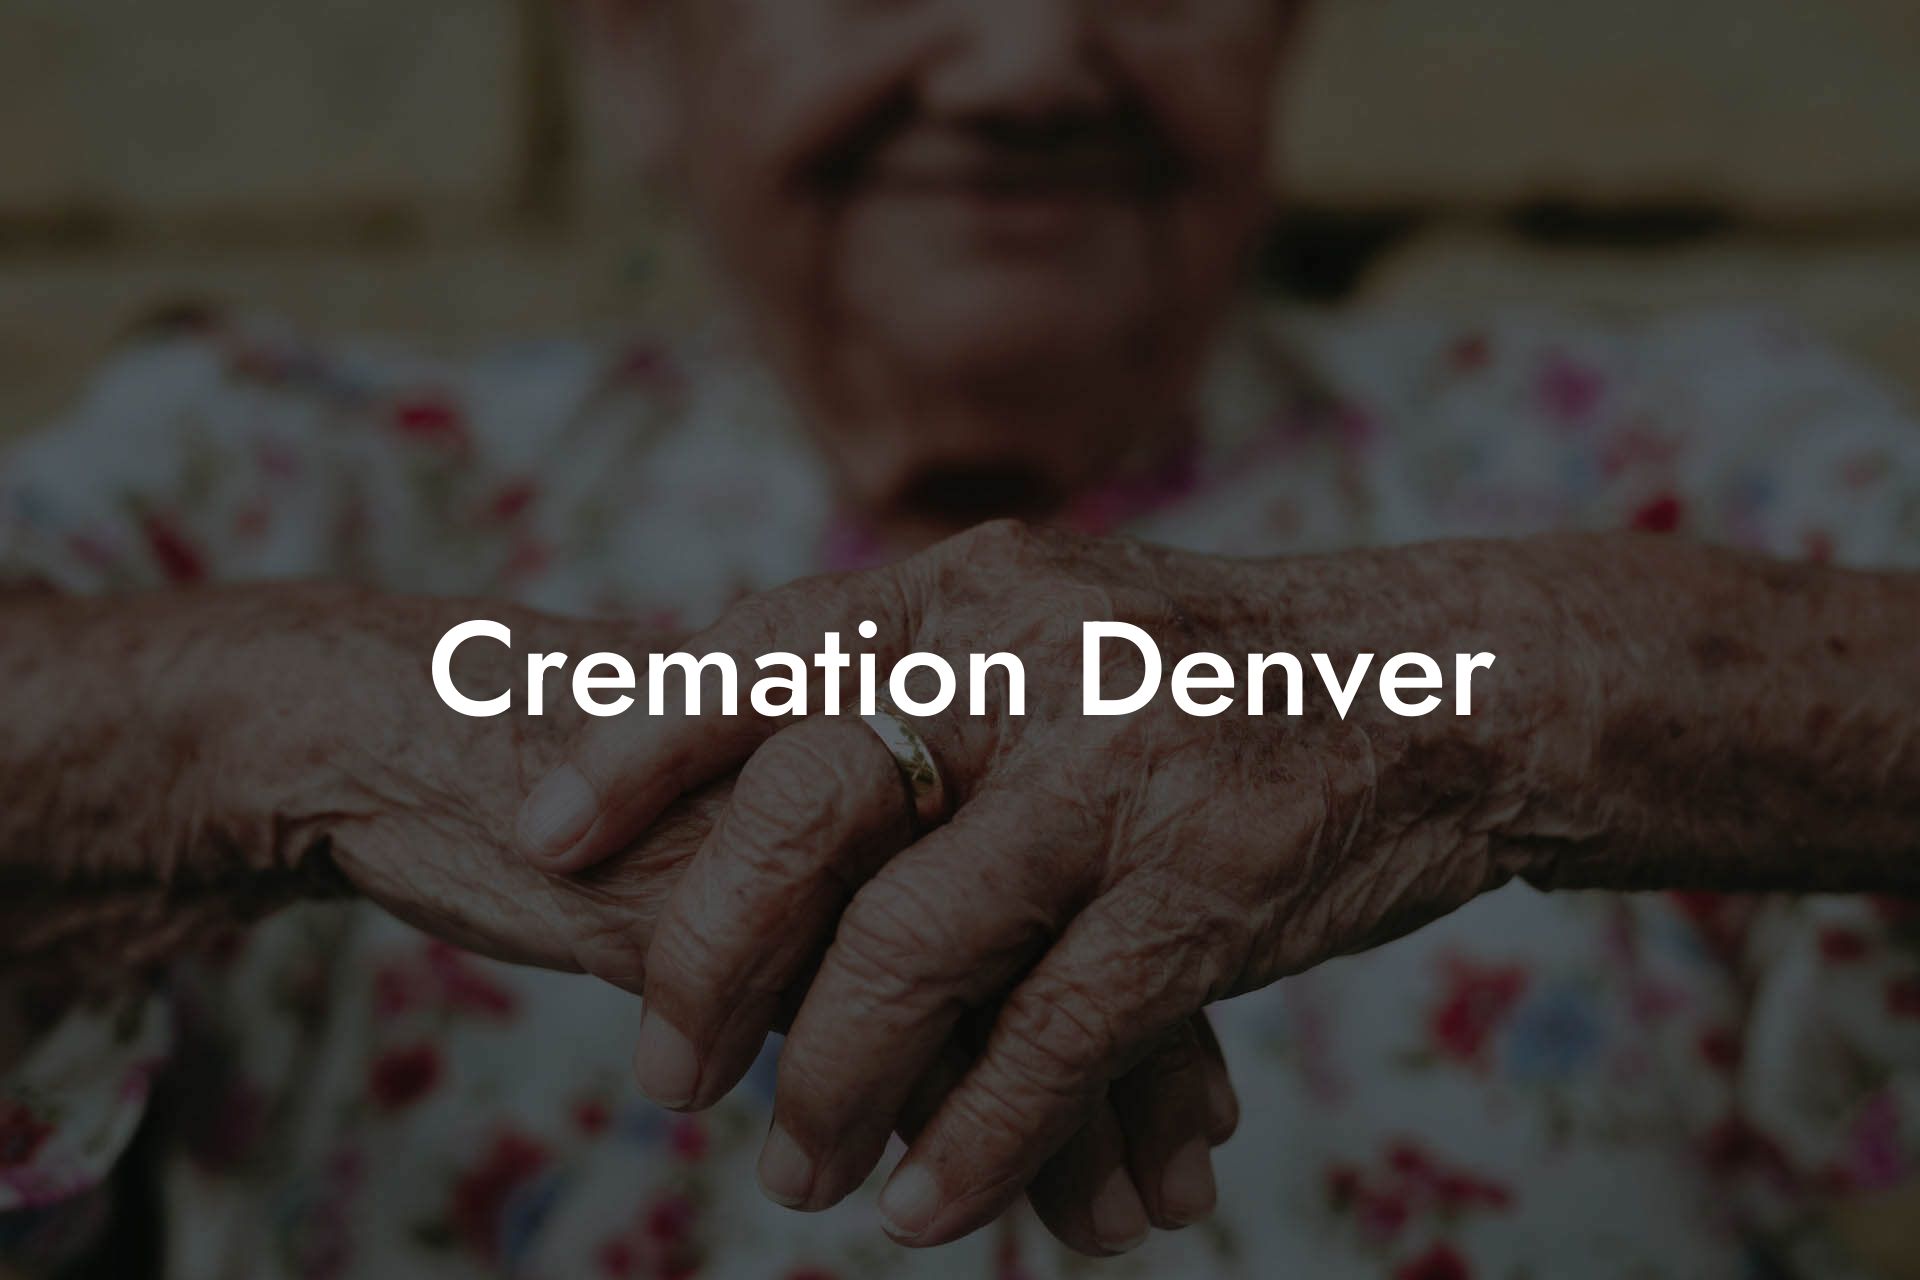 Cremation Denver